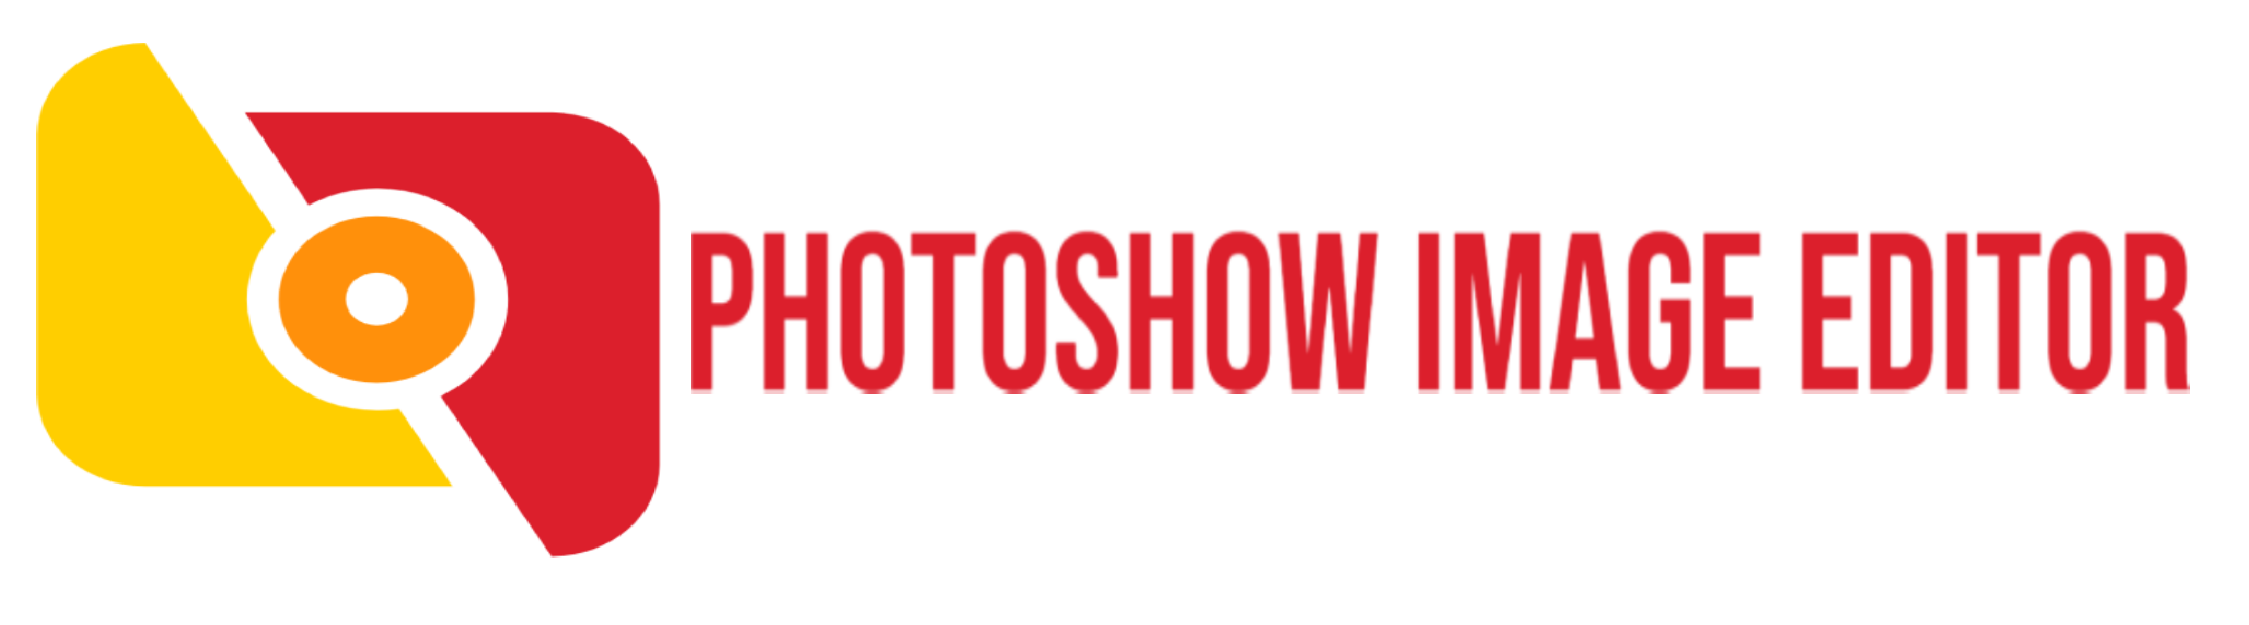 Photoshow Image Editor (1)